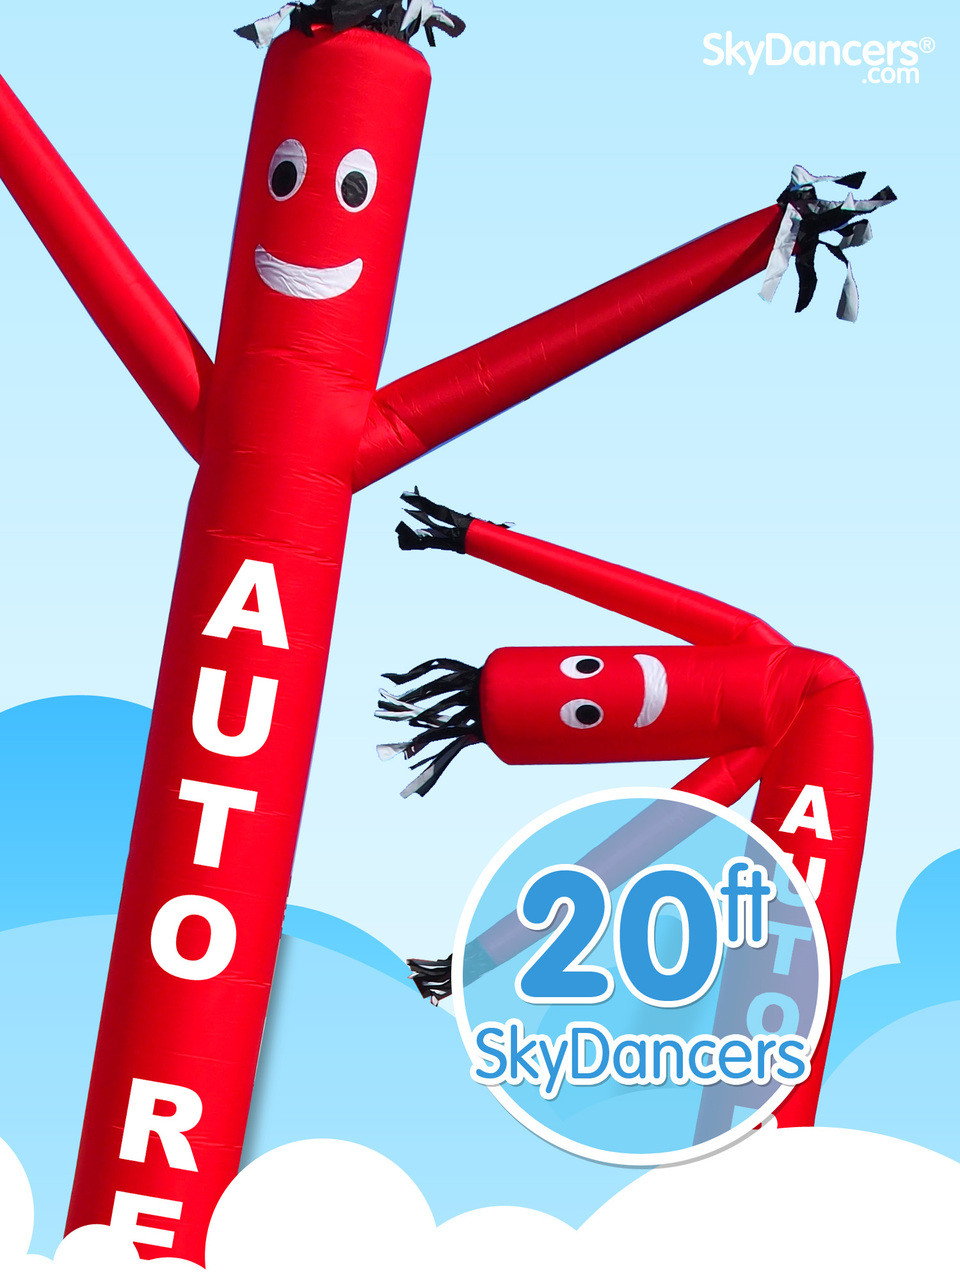 Sky Dancer, US Auto Supplies